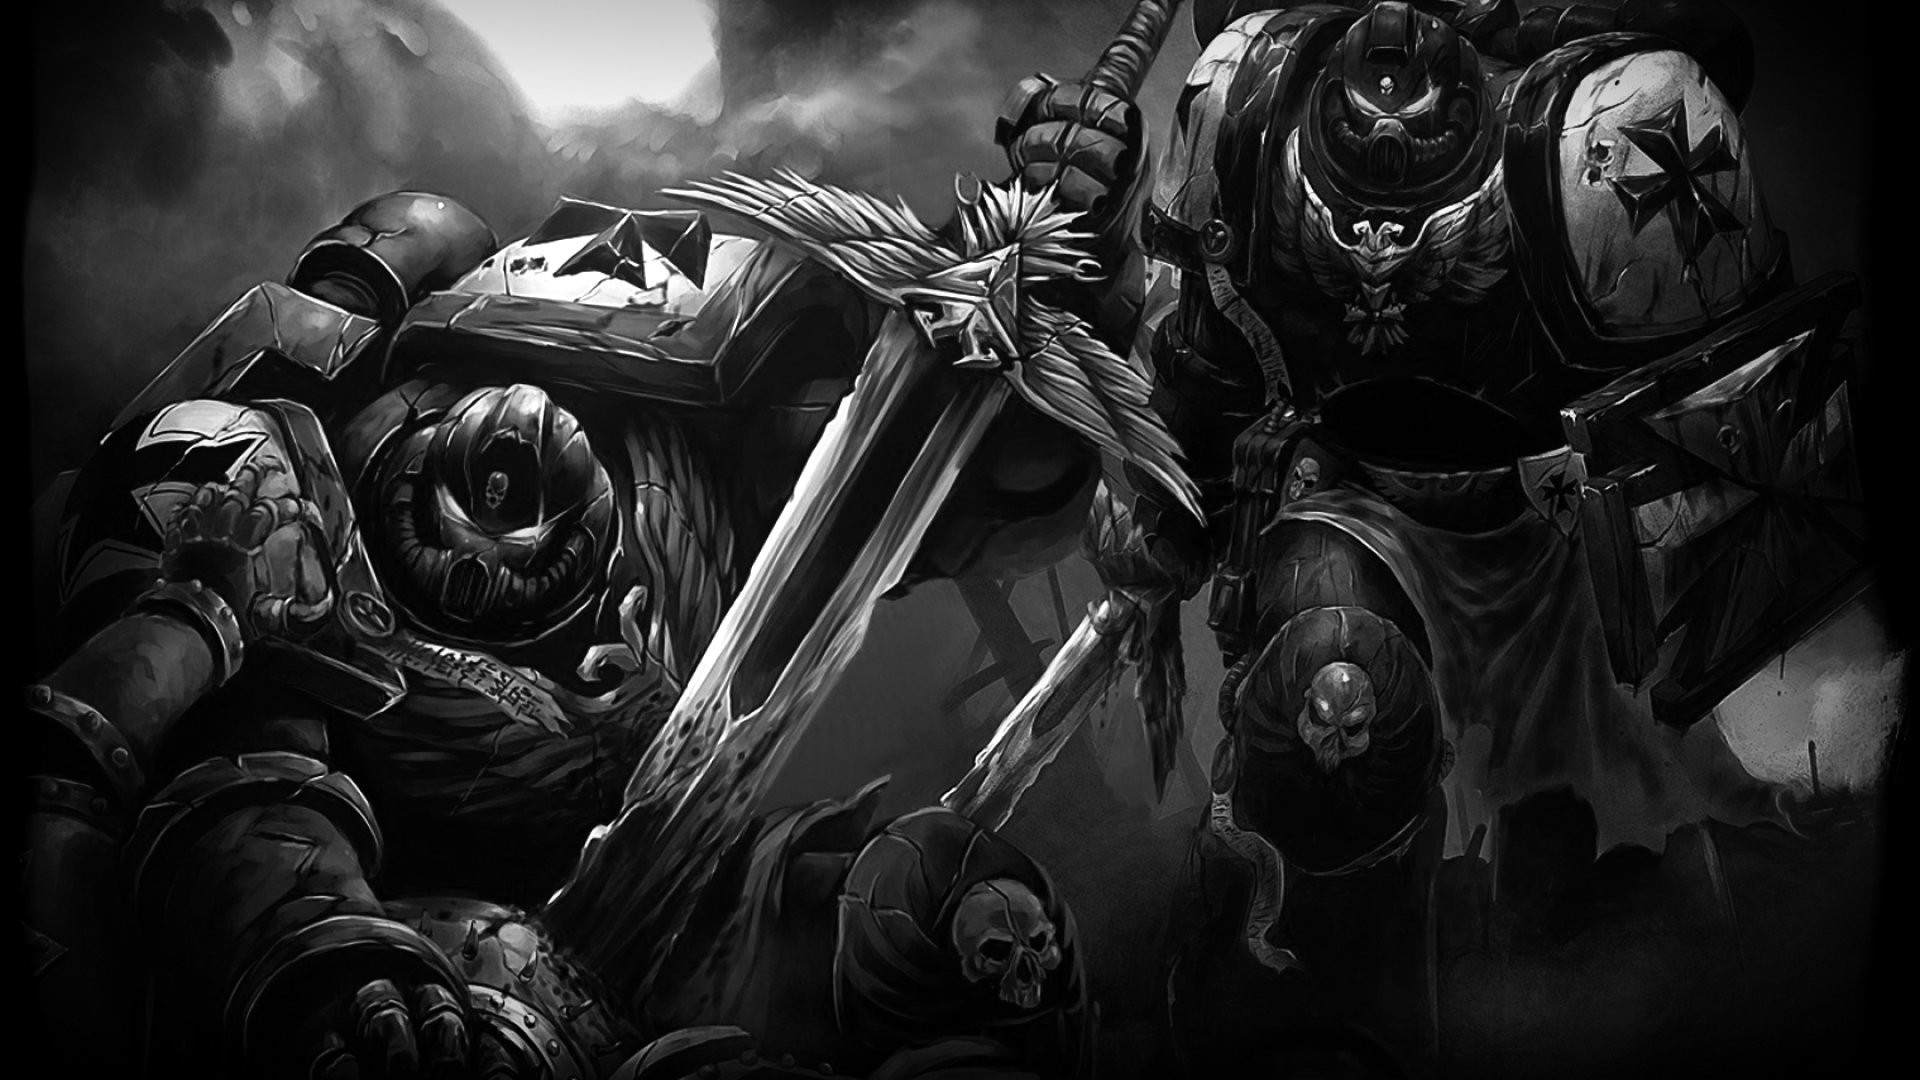 Black Templar Warhammer 40k , HD Wallpaper & Backgrounds